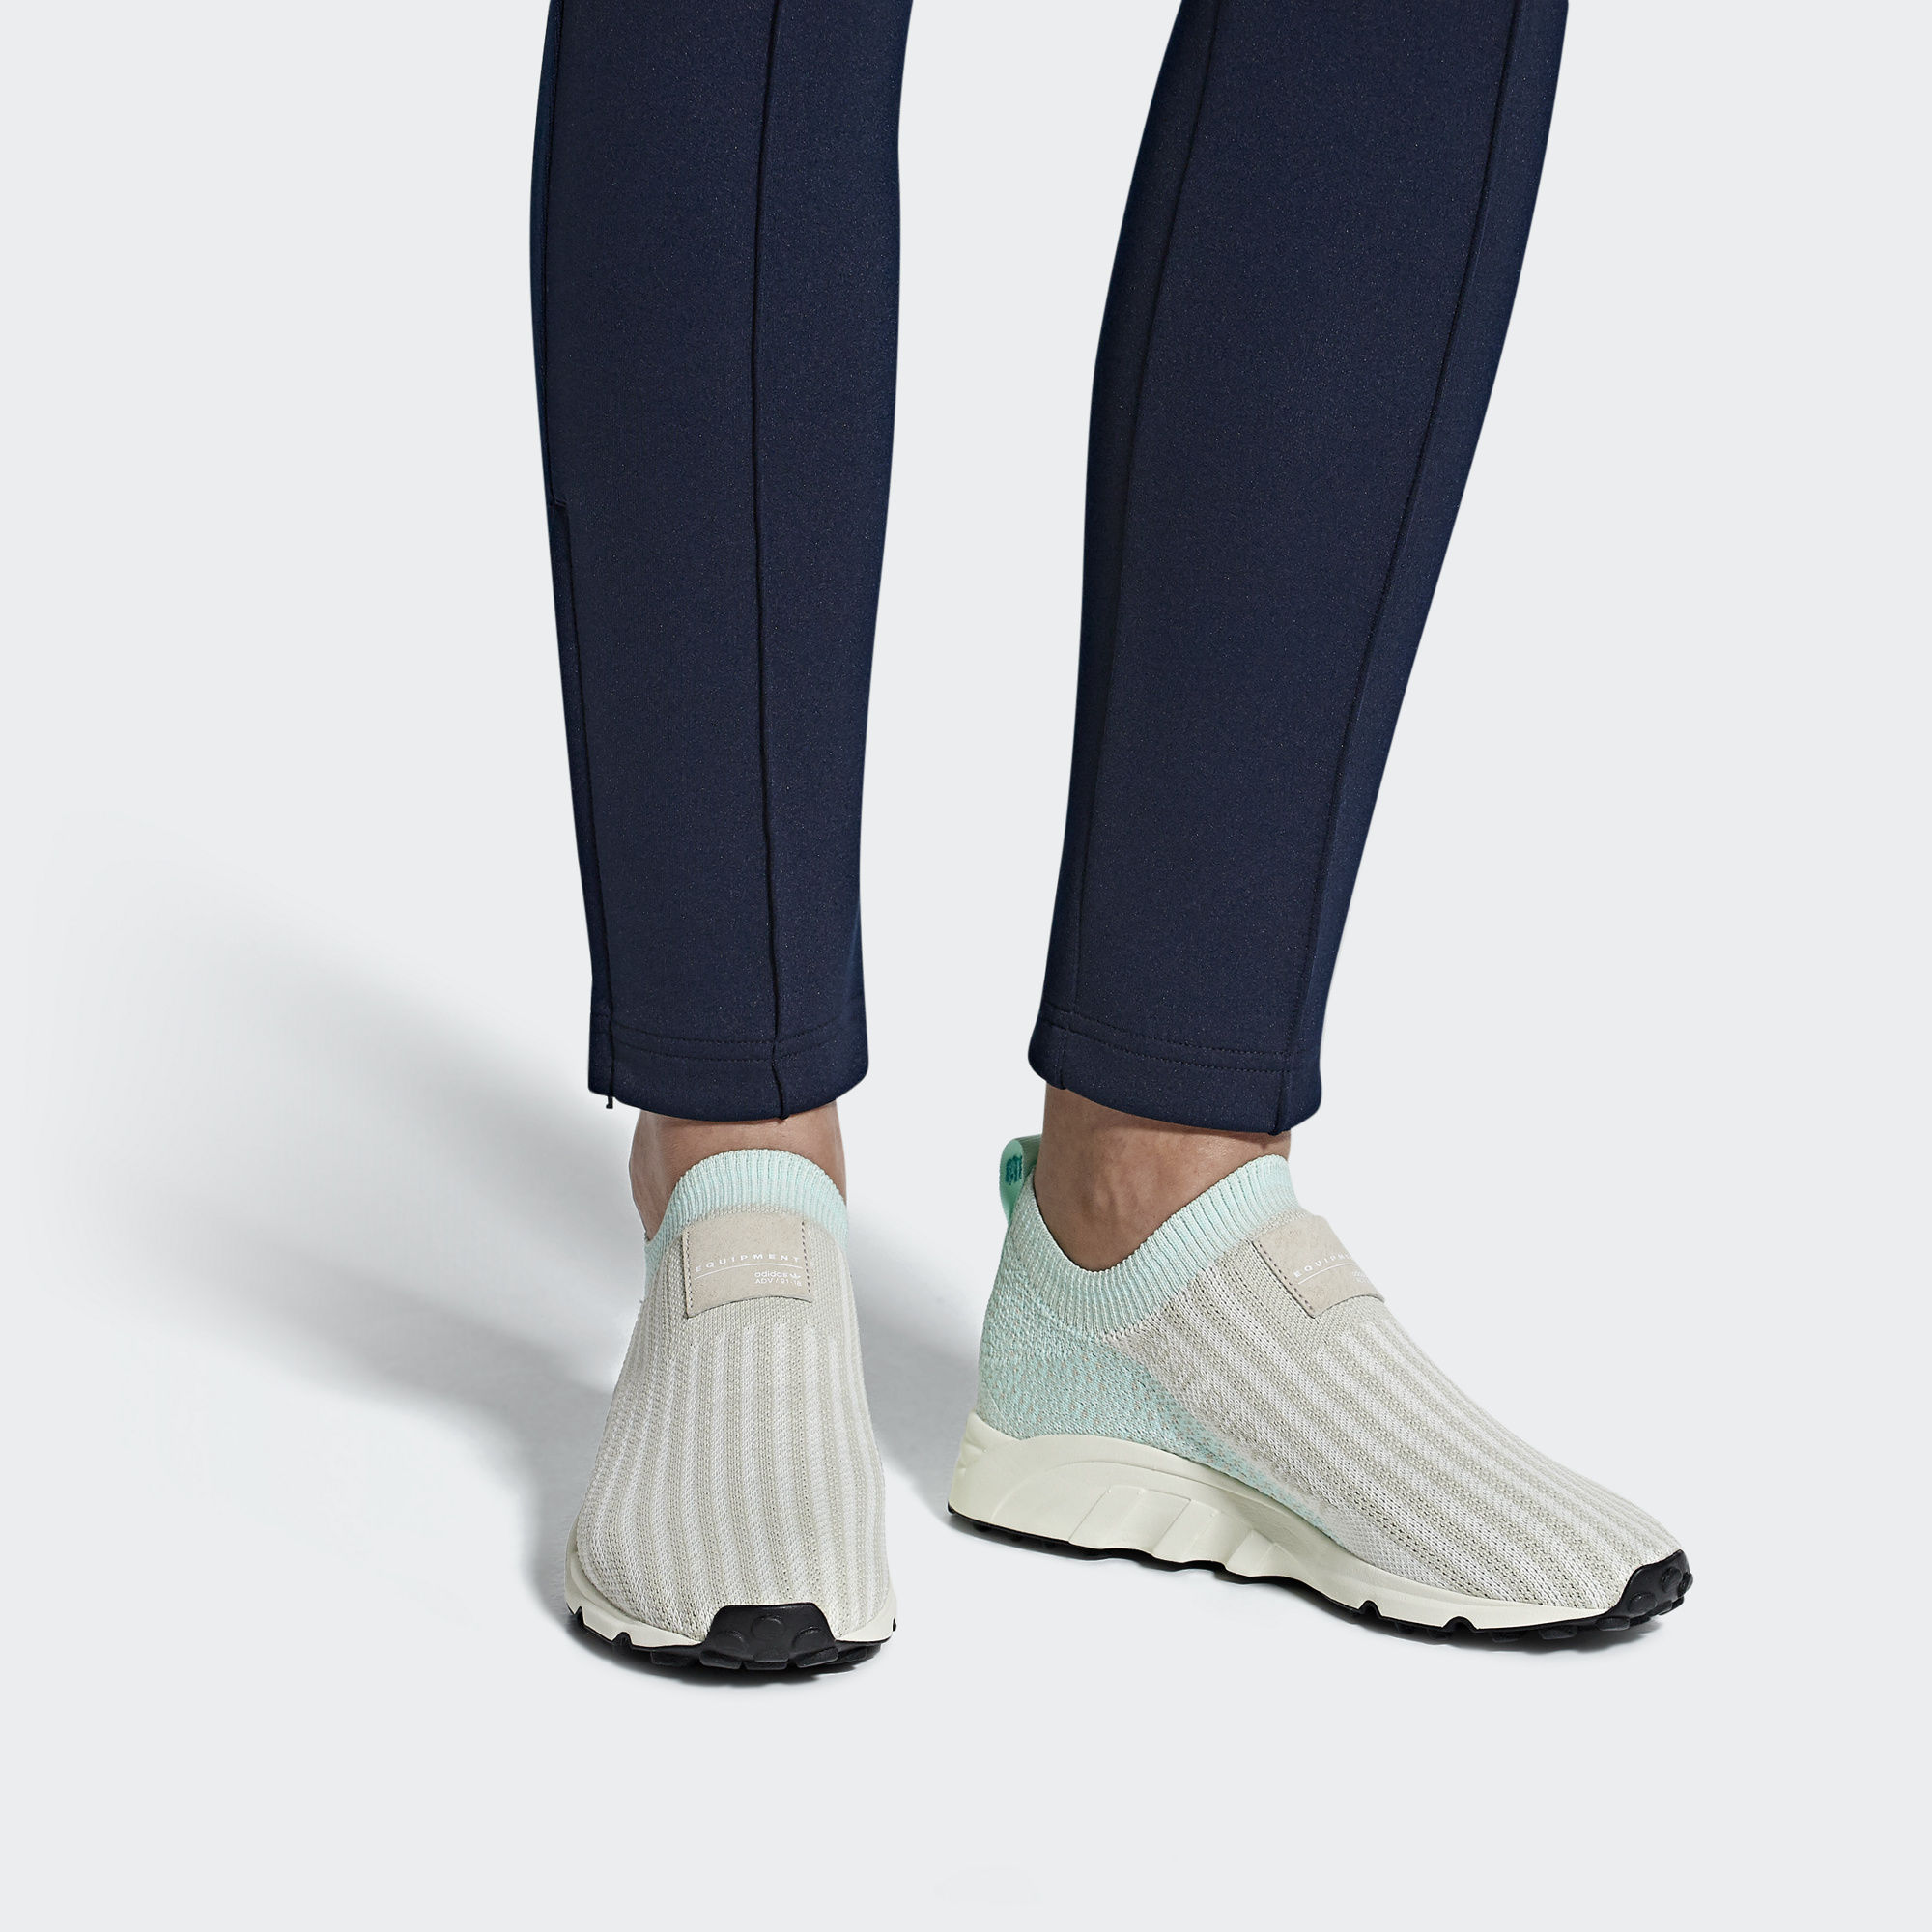 adidas originals eqt support sock primeknit